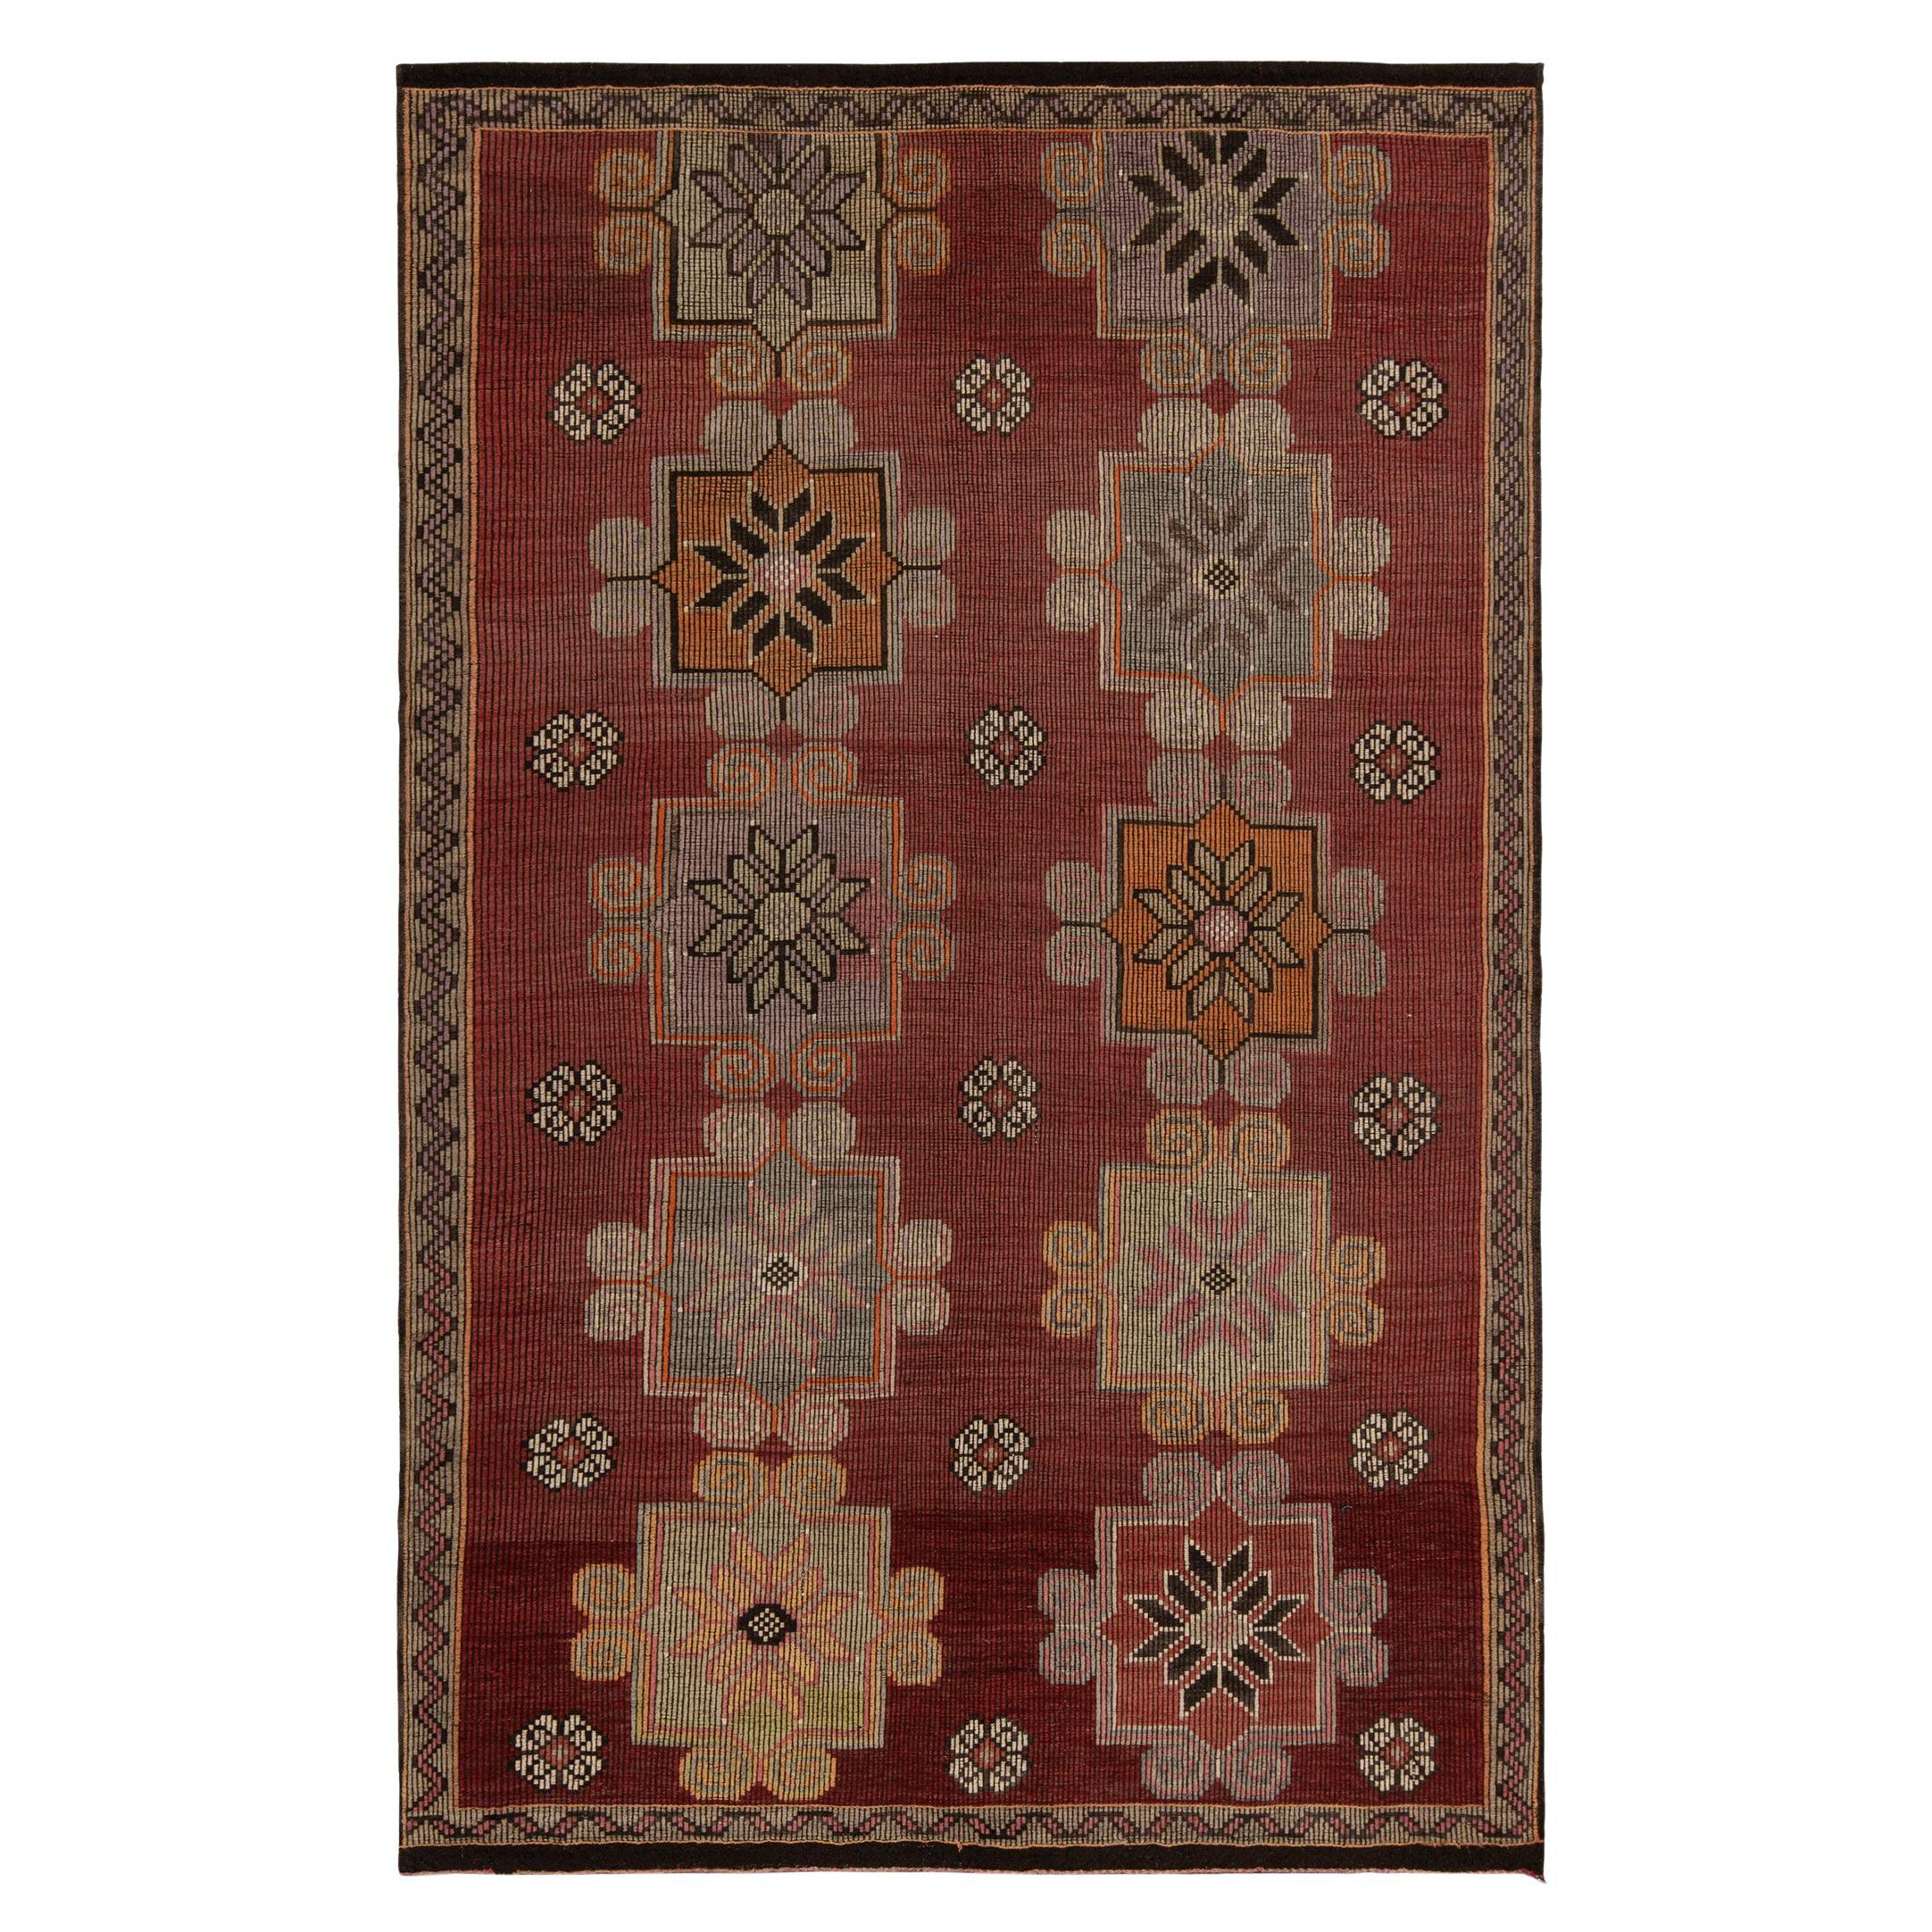 Vintage Kilim Rug in Red, Brown Tribal Geometric Floral Pattern by Rug & Kilim